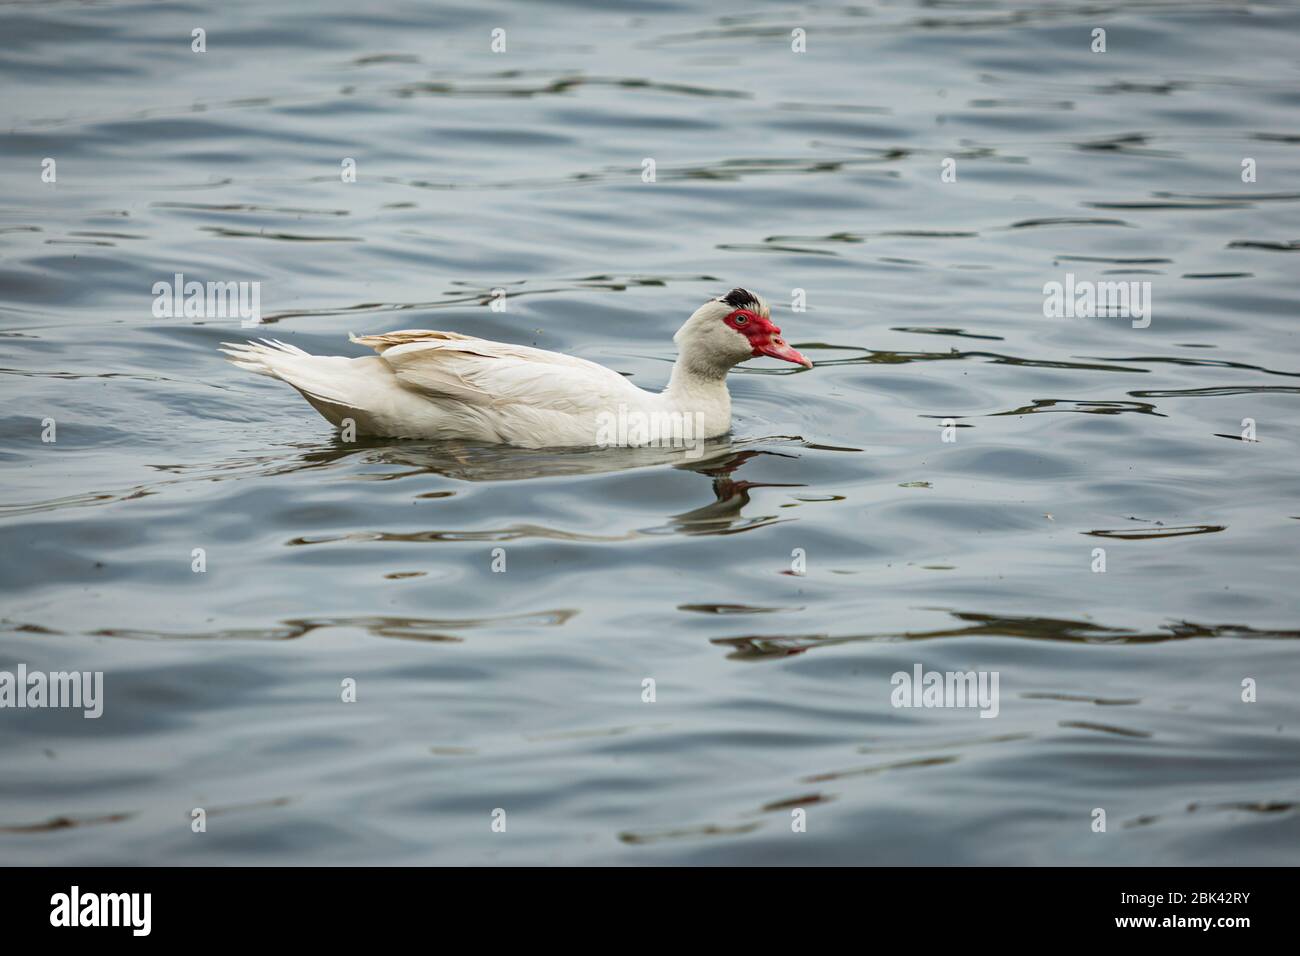 Große südamerikanische Muskowienente, eine einheimische Ente von weißer Farbe mit rotem Schnabel, der im blauen See schwimmt. Stockfoto